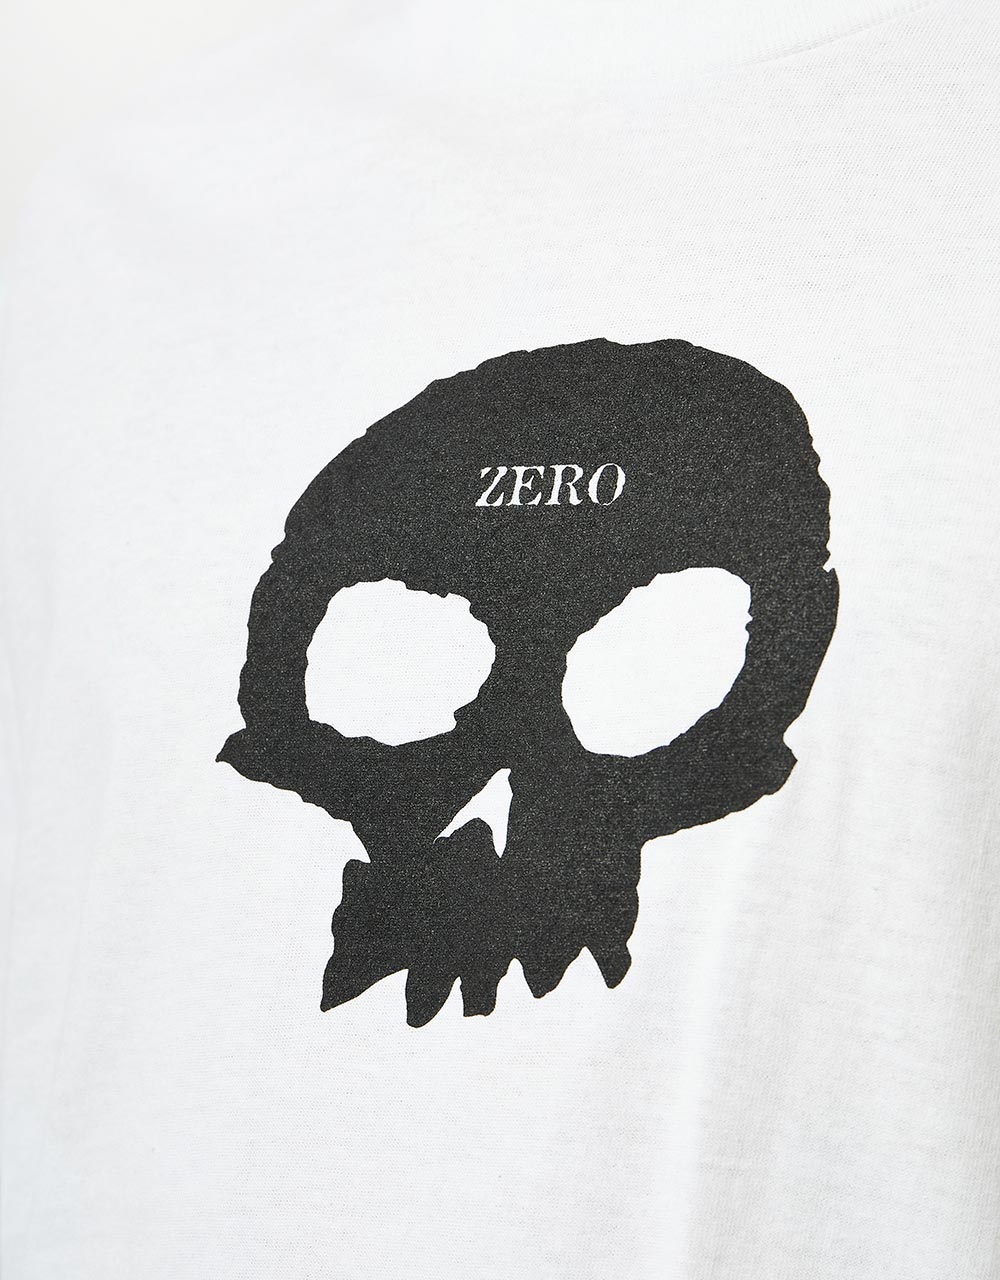 Zero Single Skull T-Shirt - White/Black